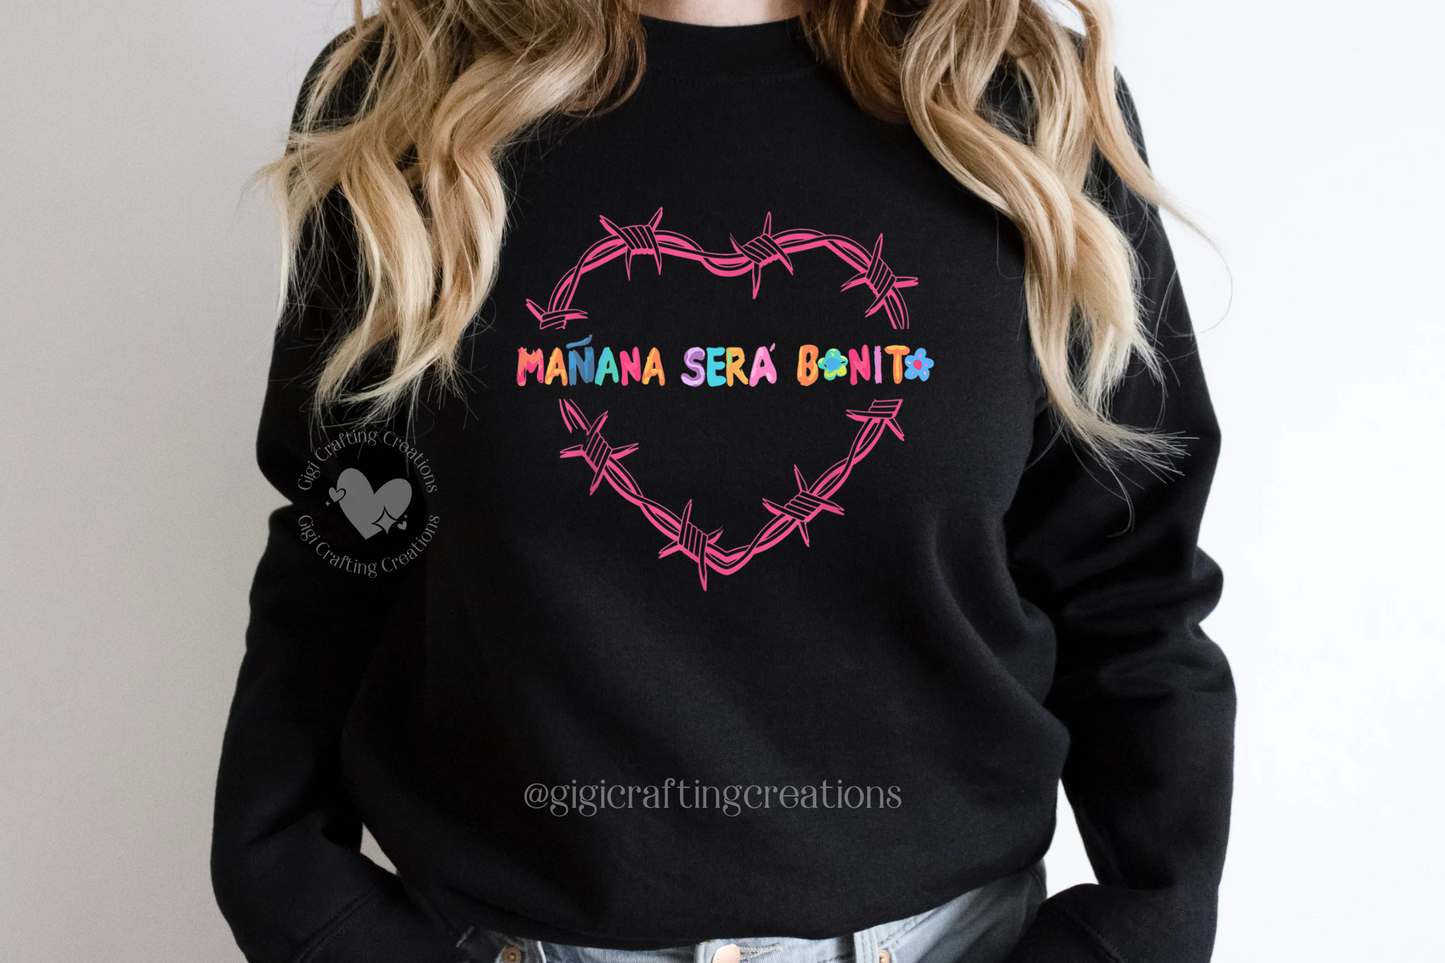 Mañana Sera Bonito Heart Sweatshirt